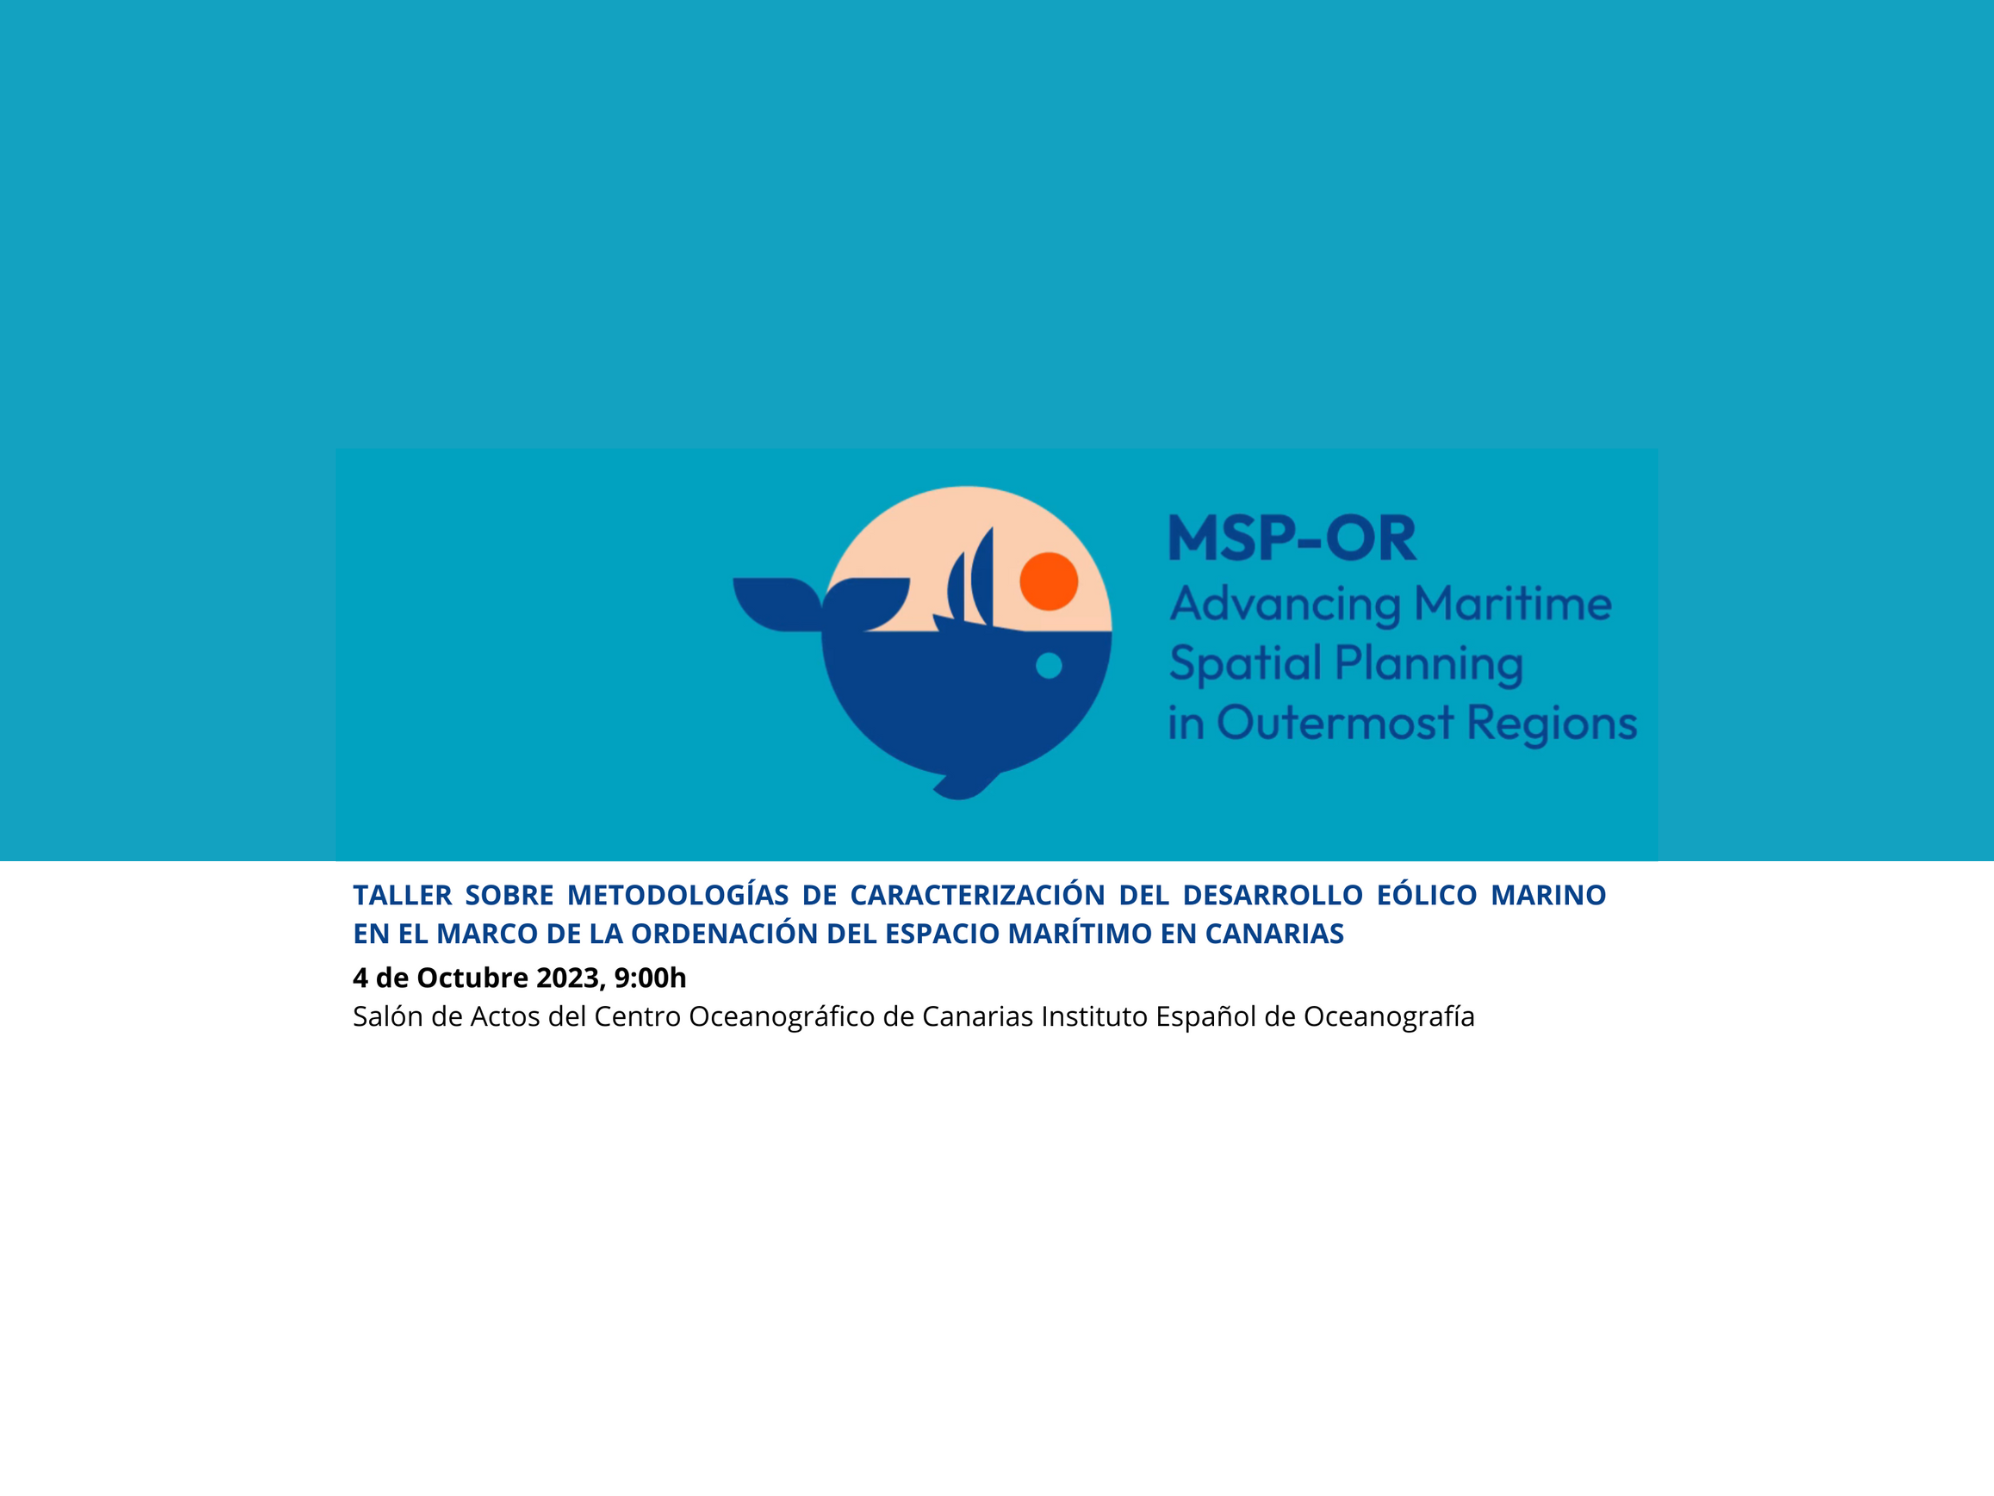 Taller sobre metodologías de caracterización del desarrollo eólico marino en el marco de la ordenación del espacio marítimo en Canarias